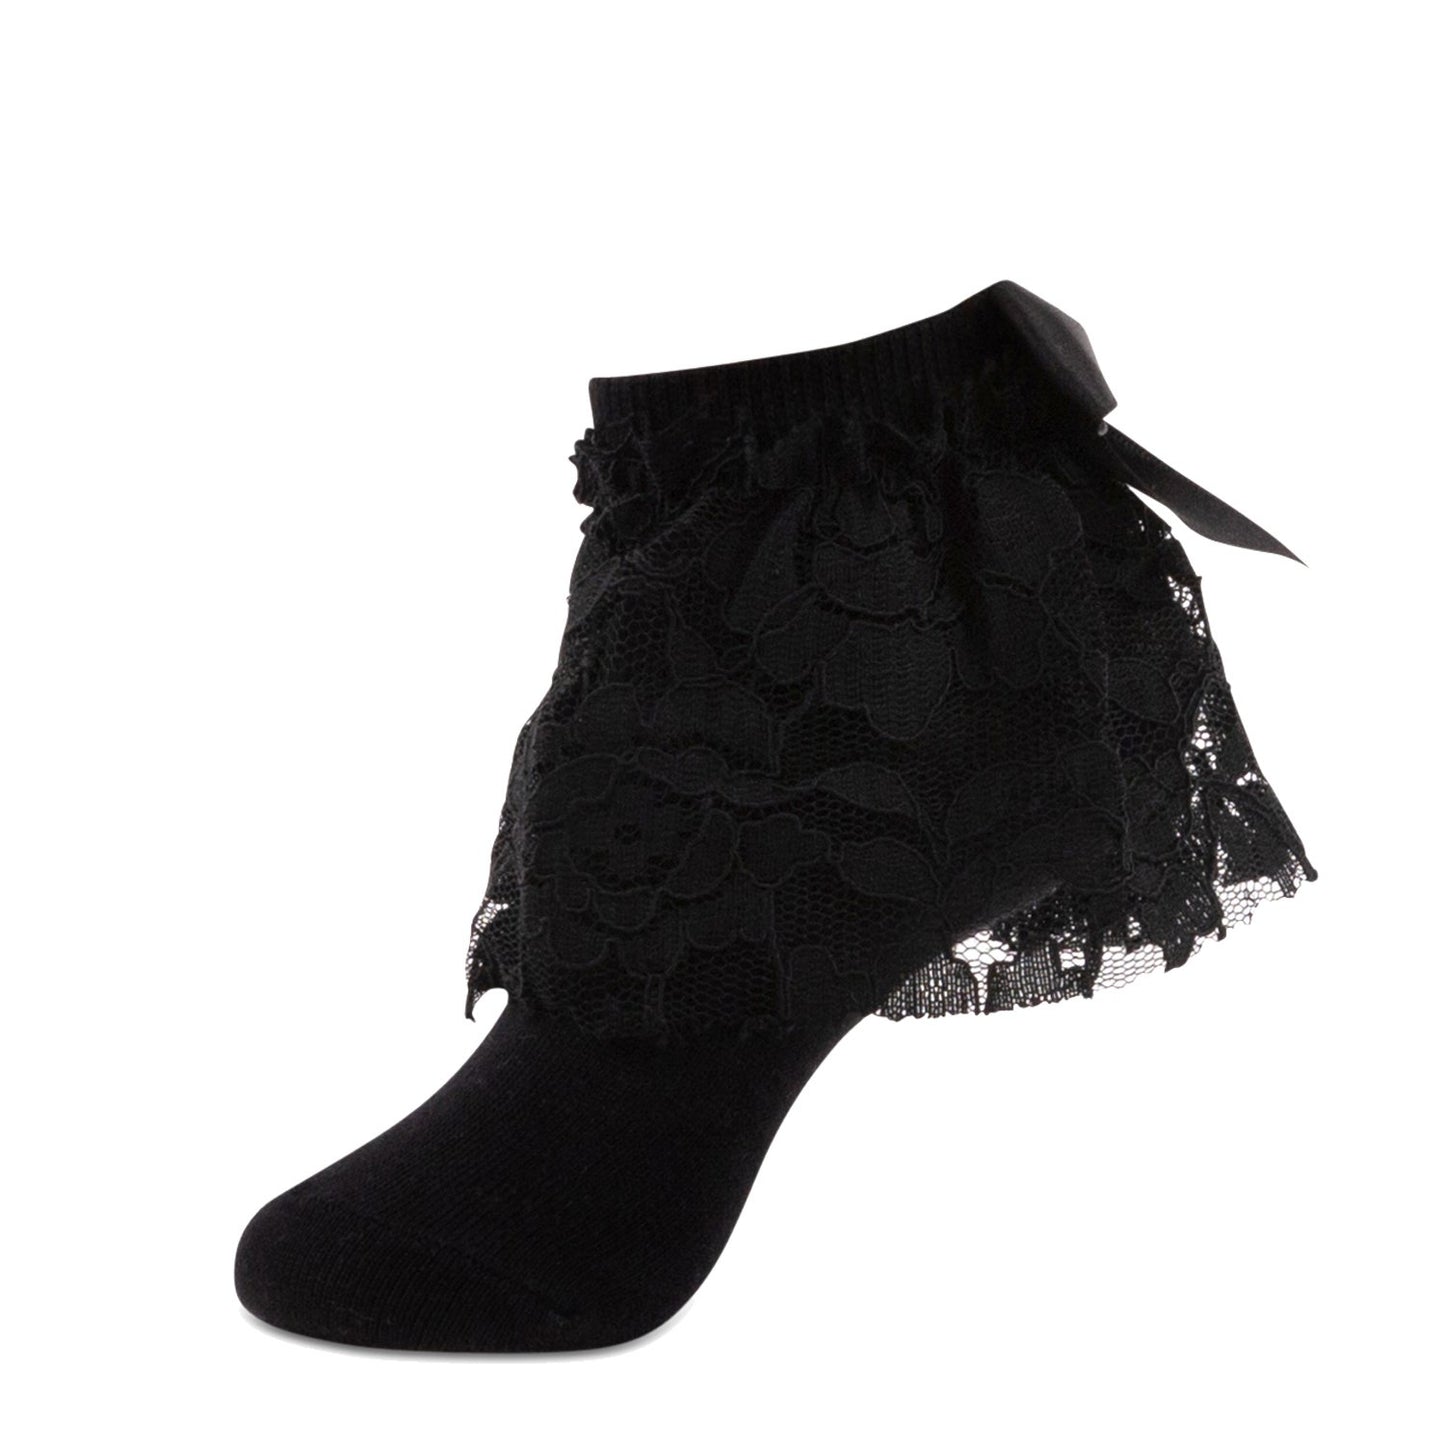 jrp socks black floral lace anklet sock